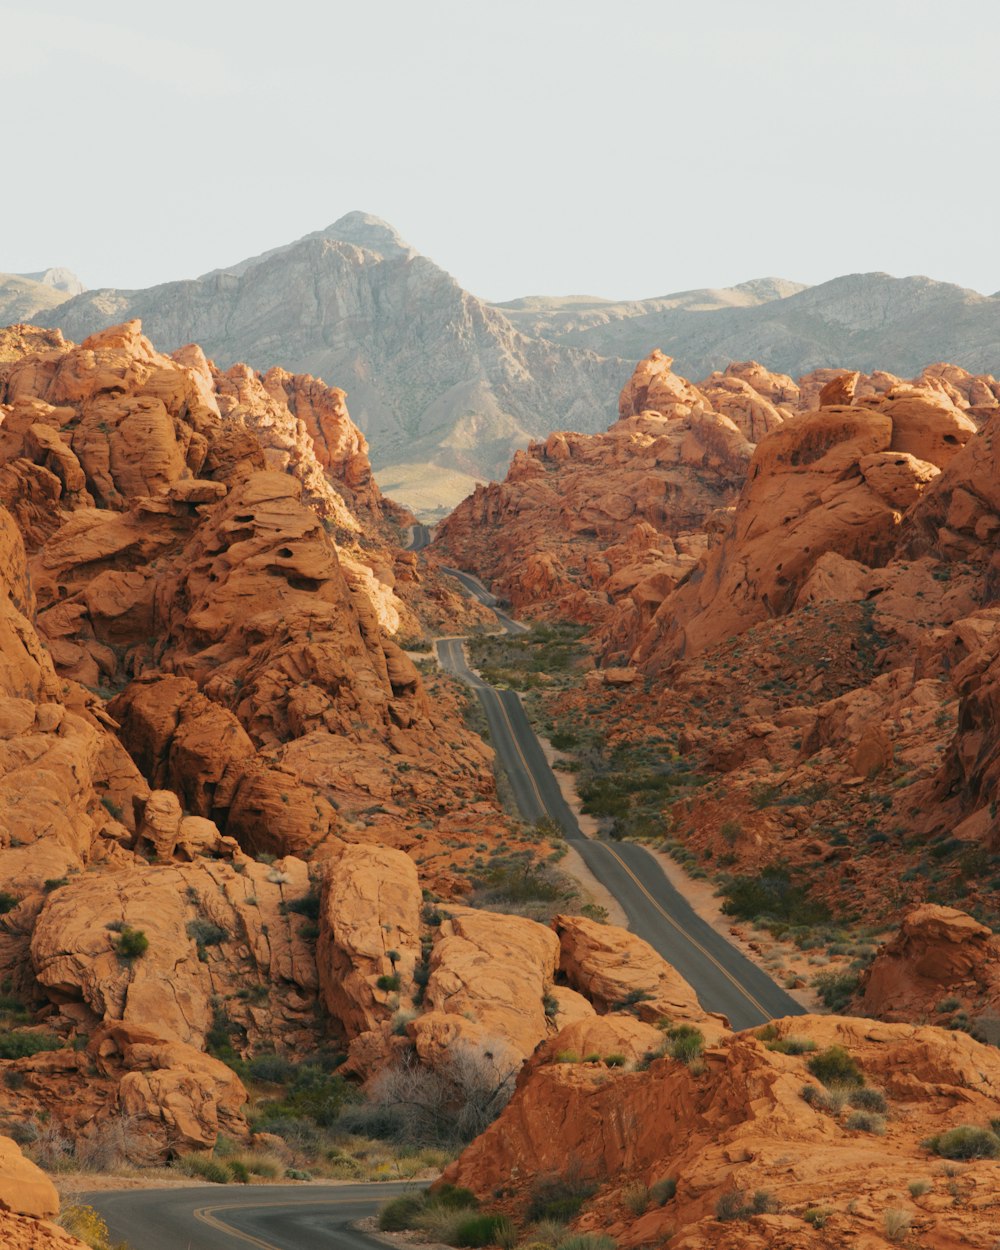 estrada cinzenta entre montanhas rochosas marrons durante o dia